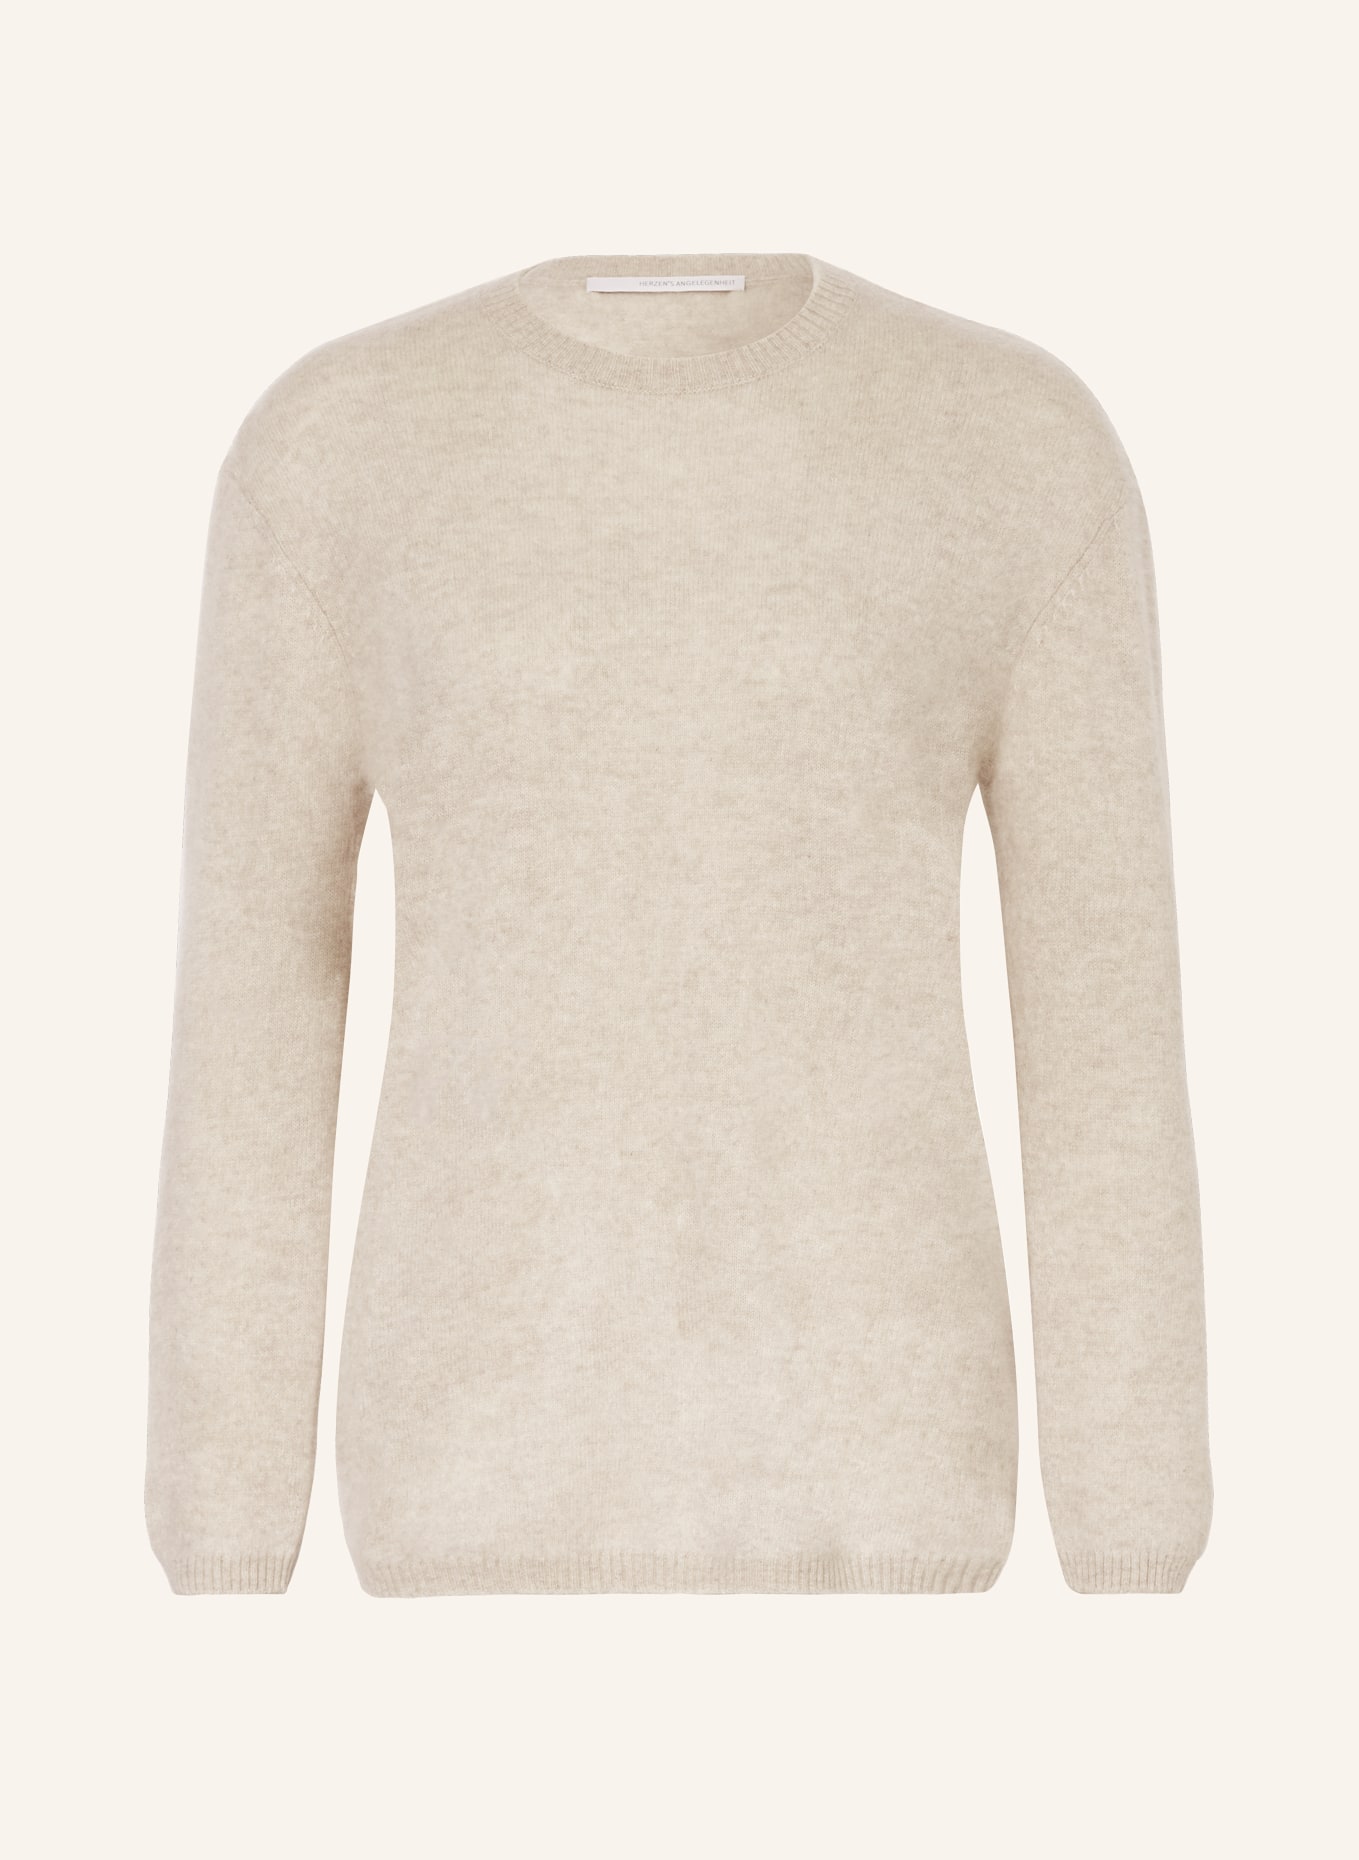 HERZEN'S ANGELEGENHEIT Cashmere-Pullover, Farbe: TAUPE (Bild 1)